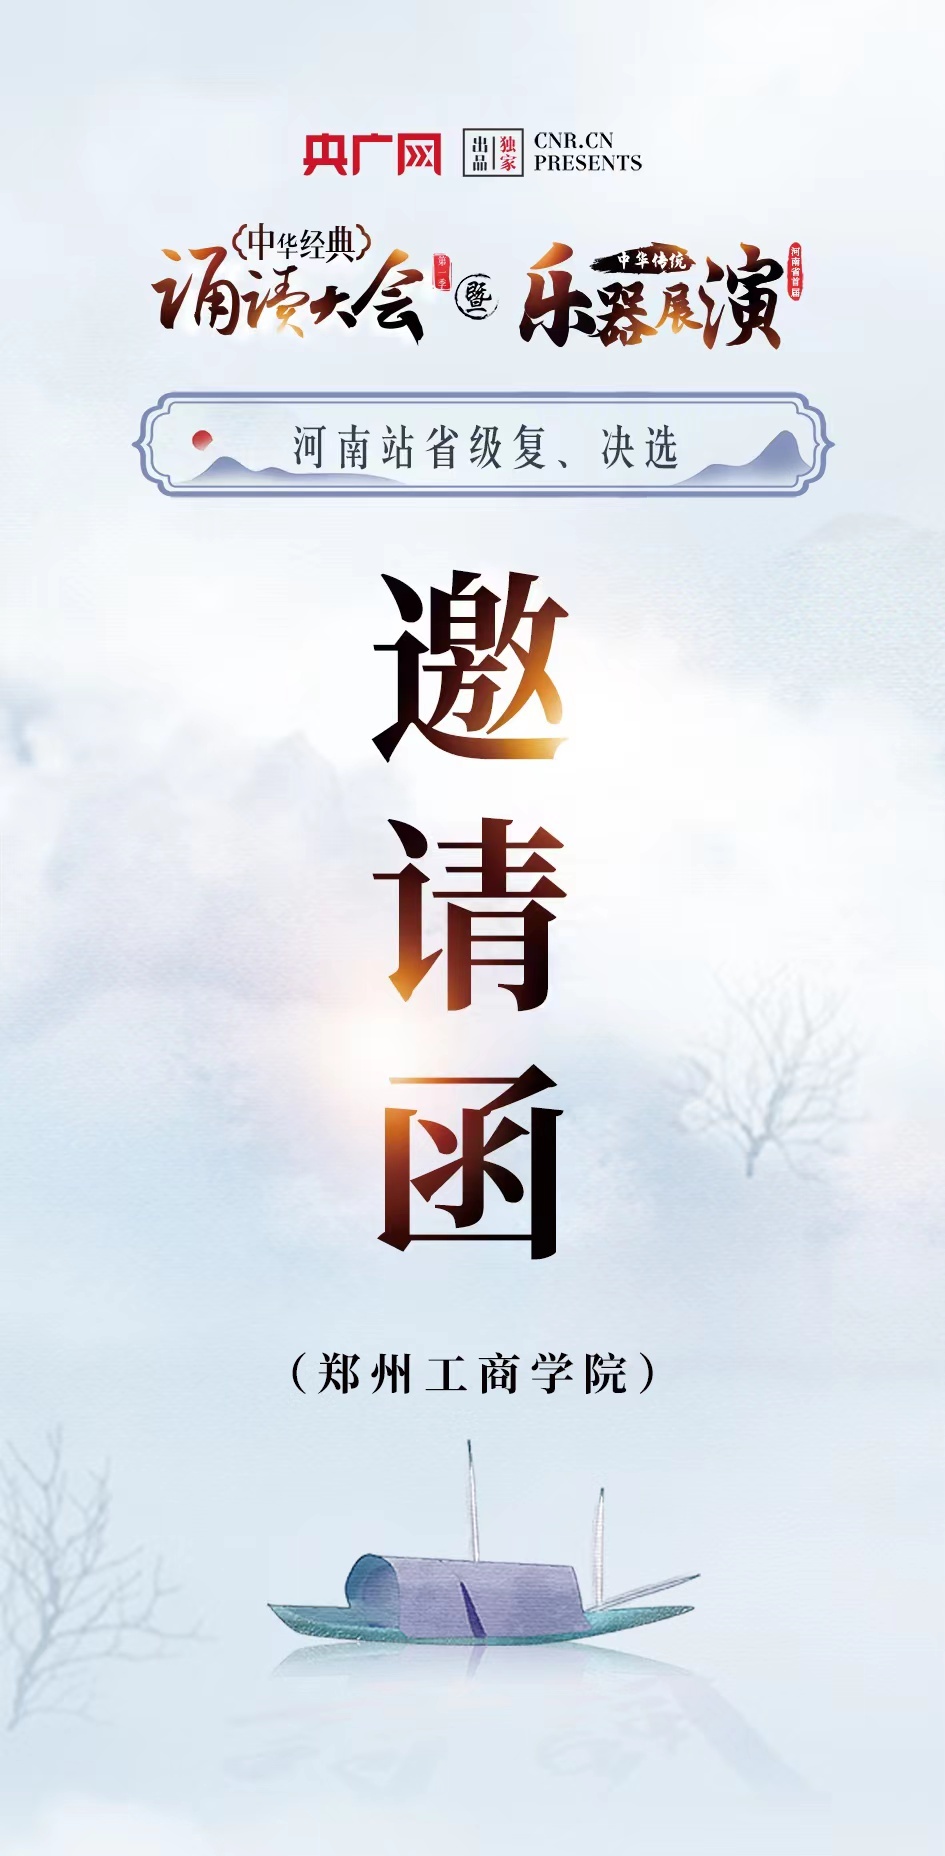 中华经典诵读大会（第一季）河南站展演决赛最新通知